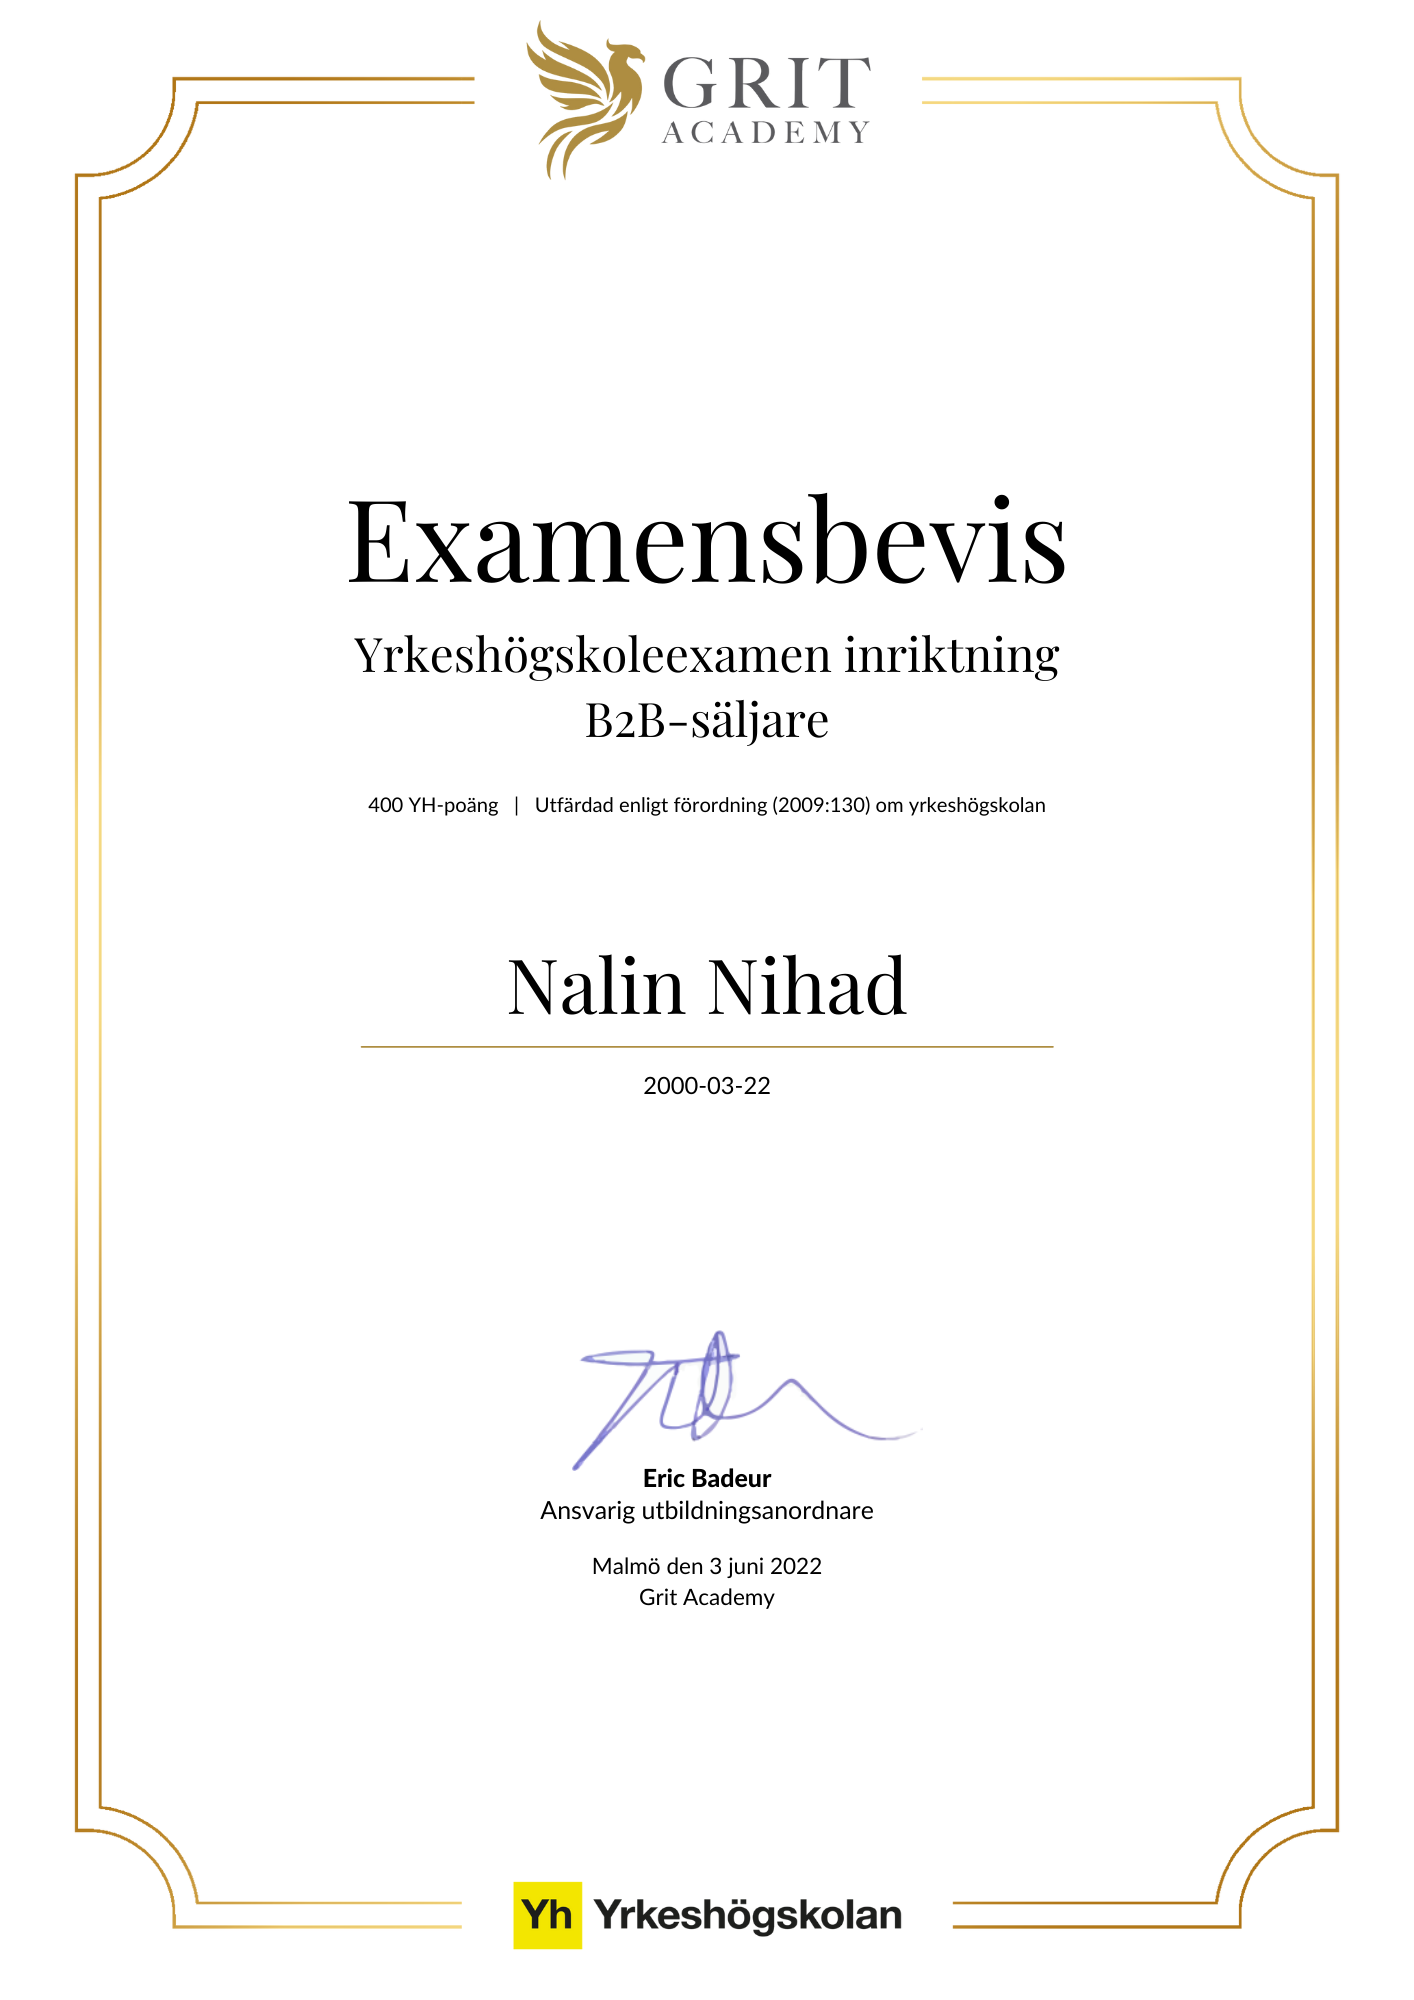 Examensbevis Nalin Nihad